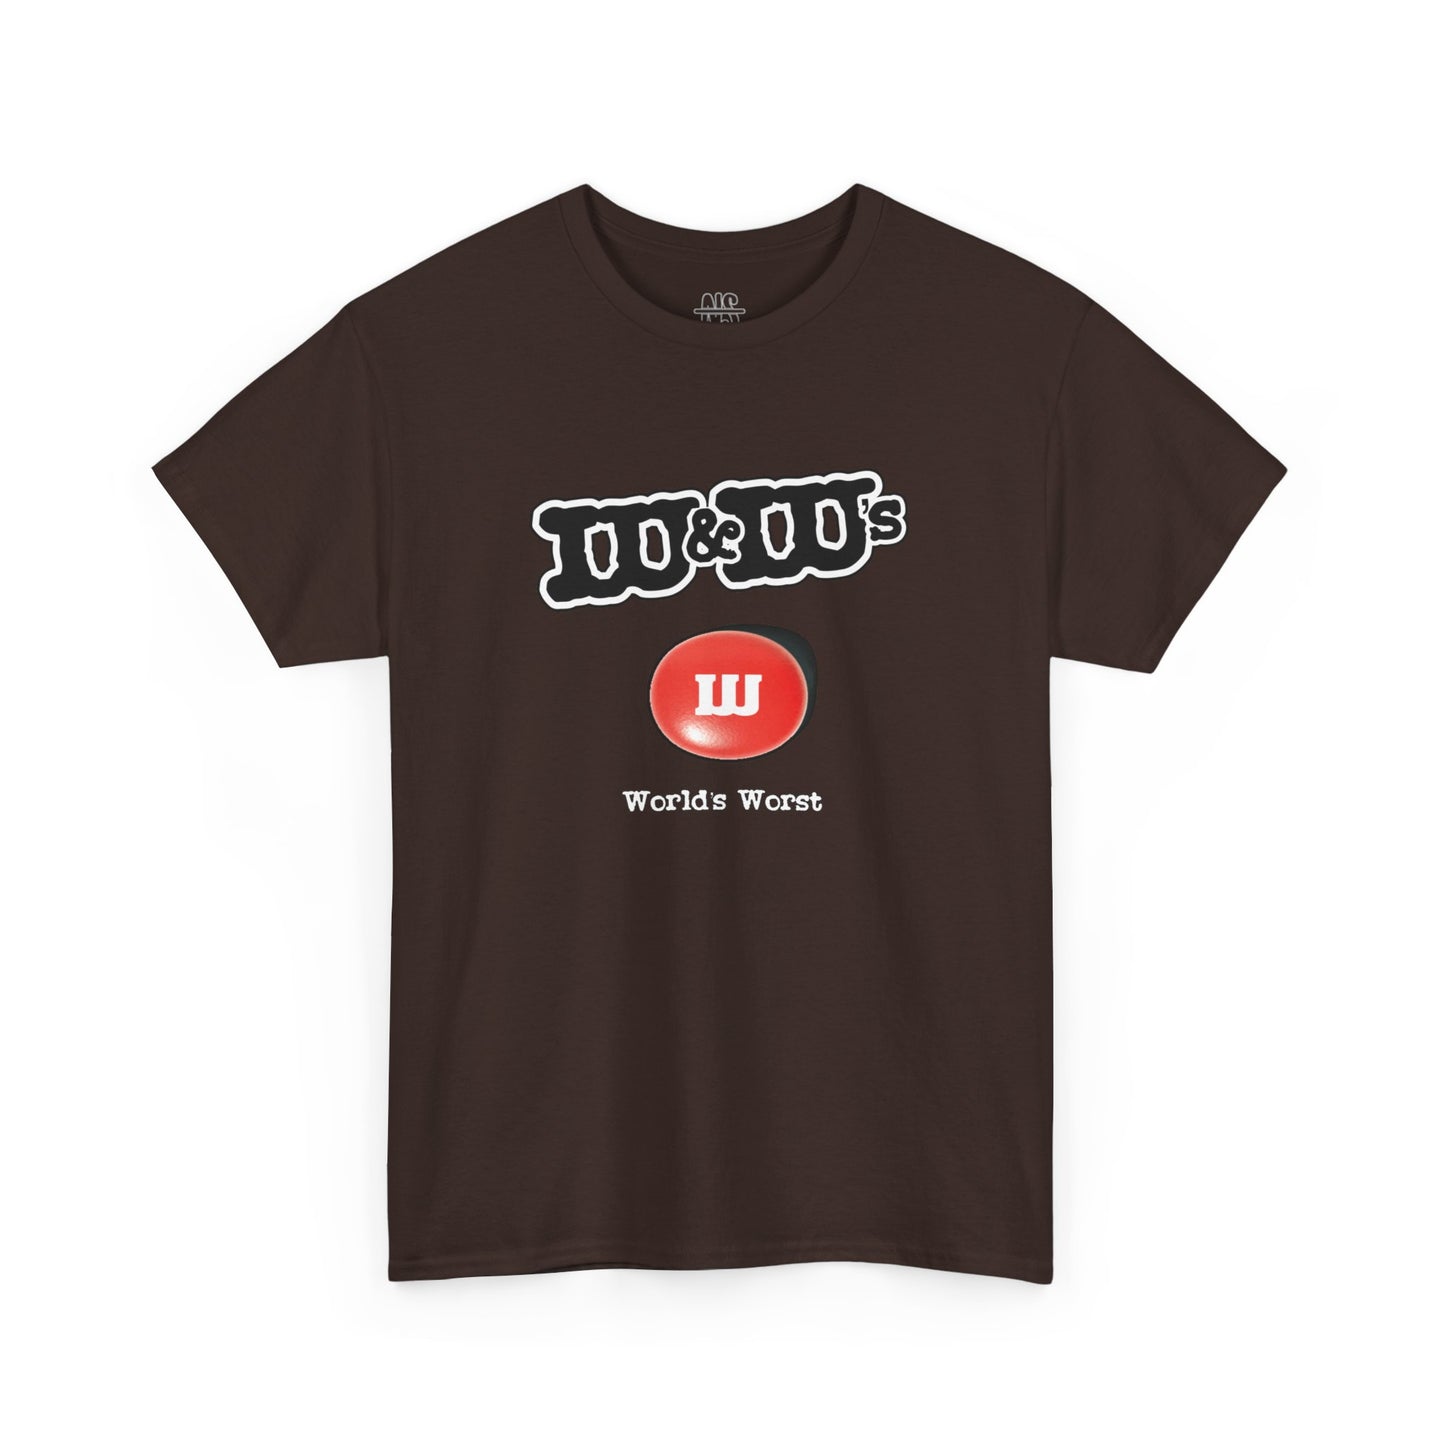 W&W’s Mock Tee - Unisex T-shirt